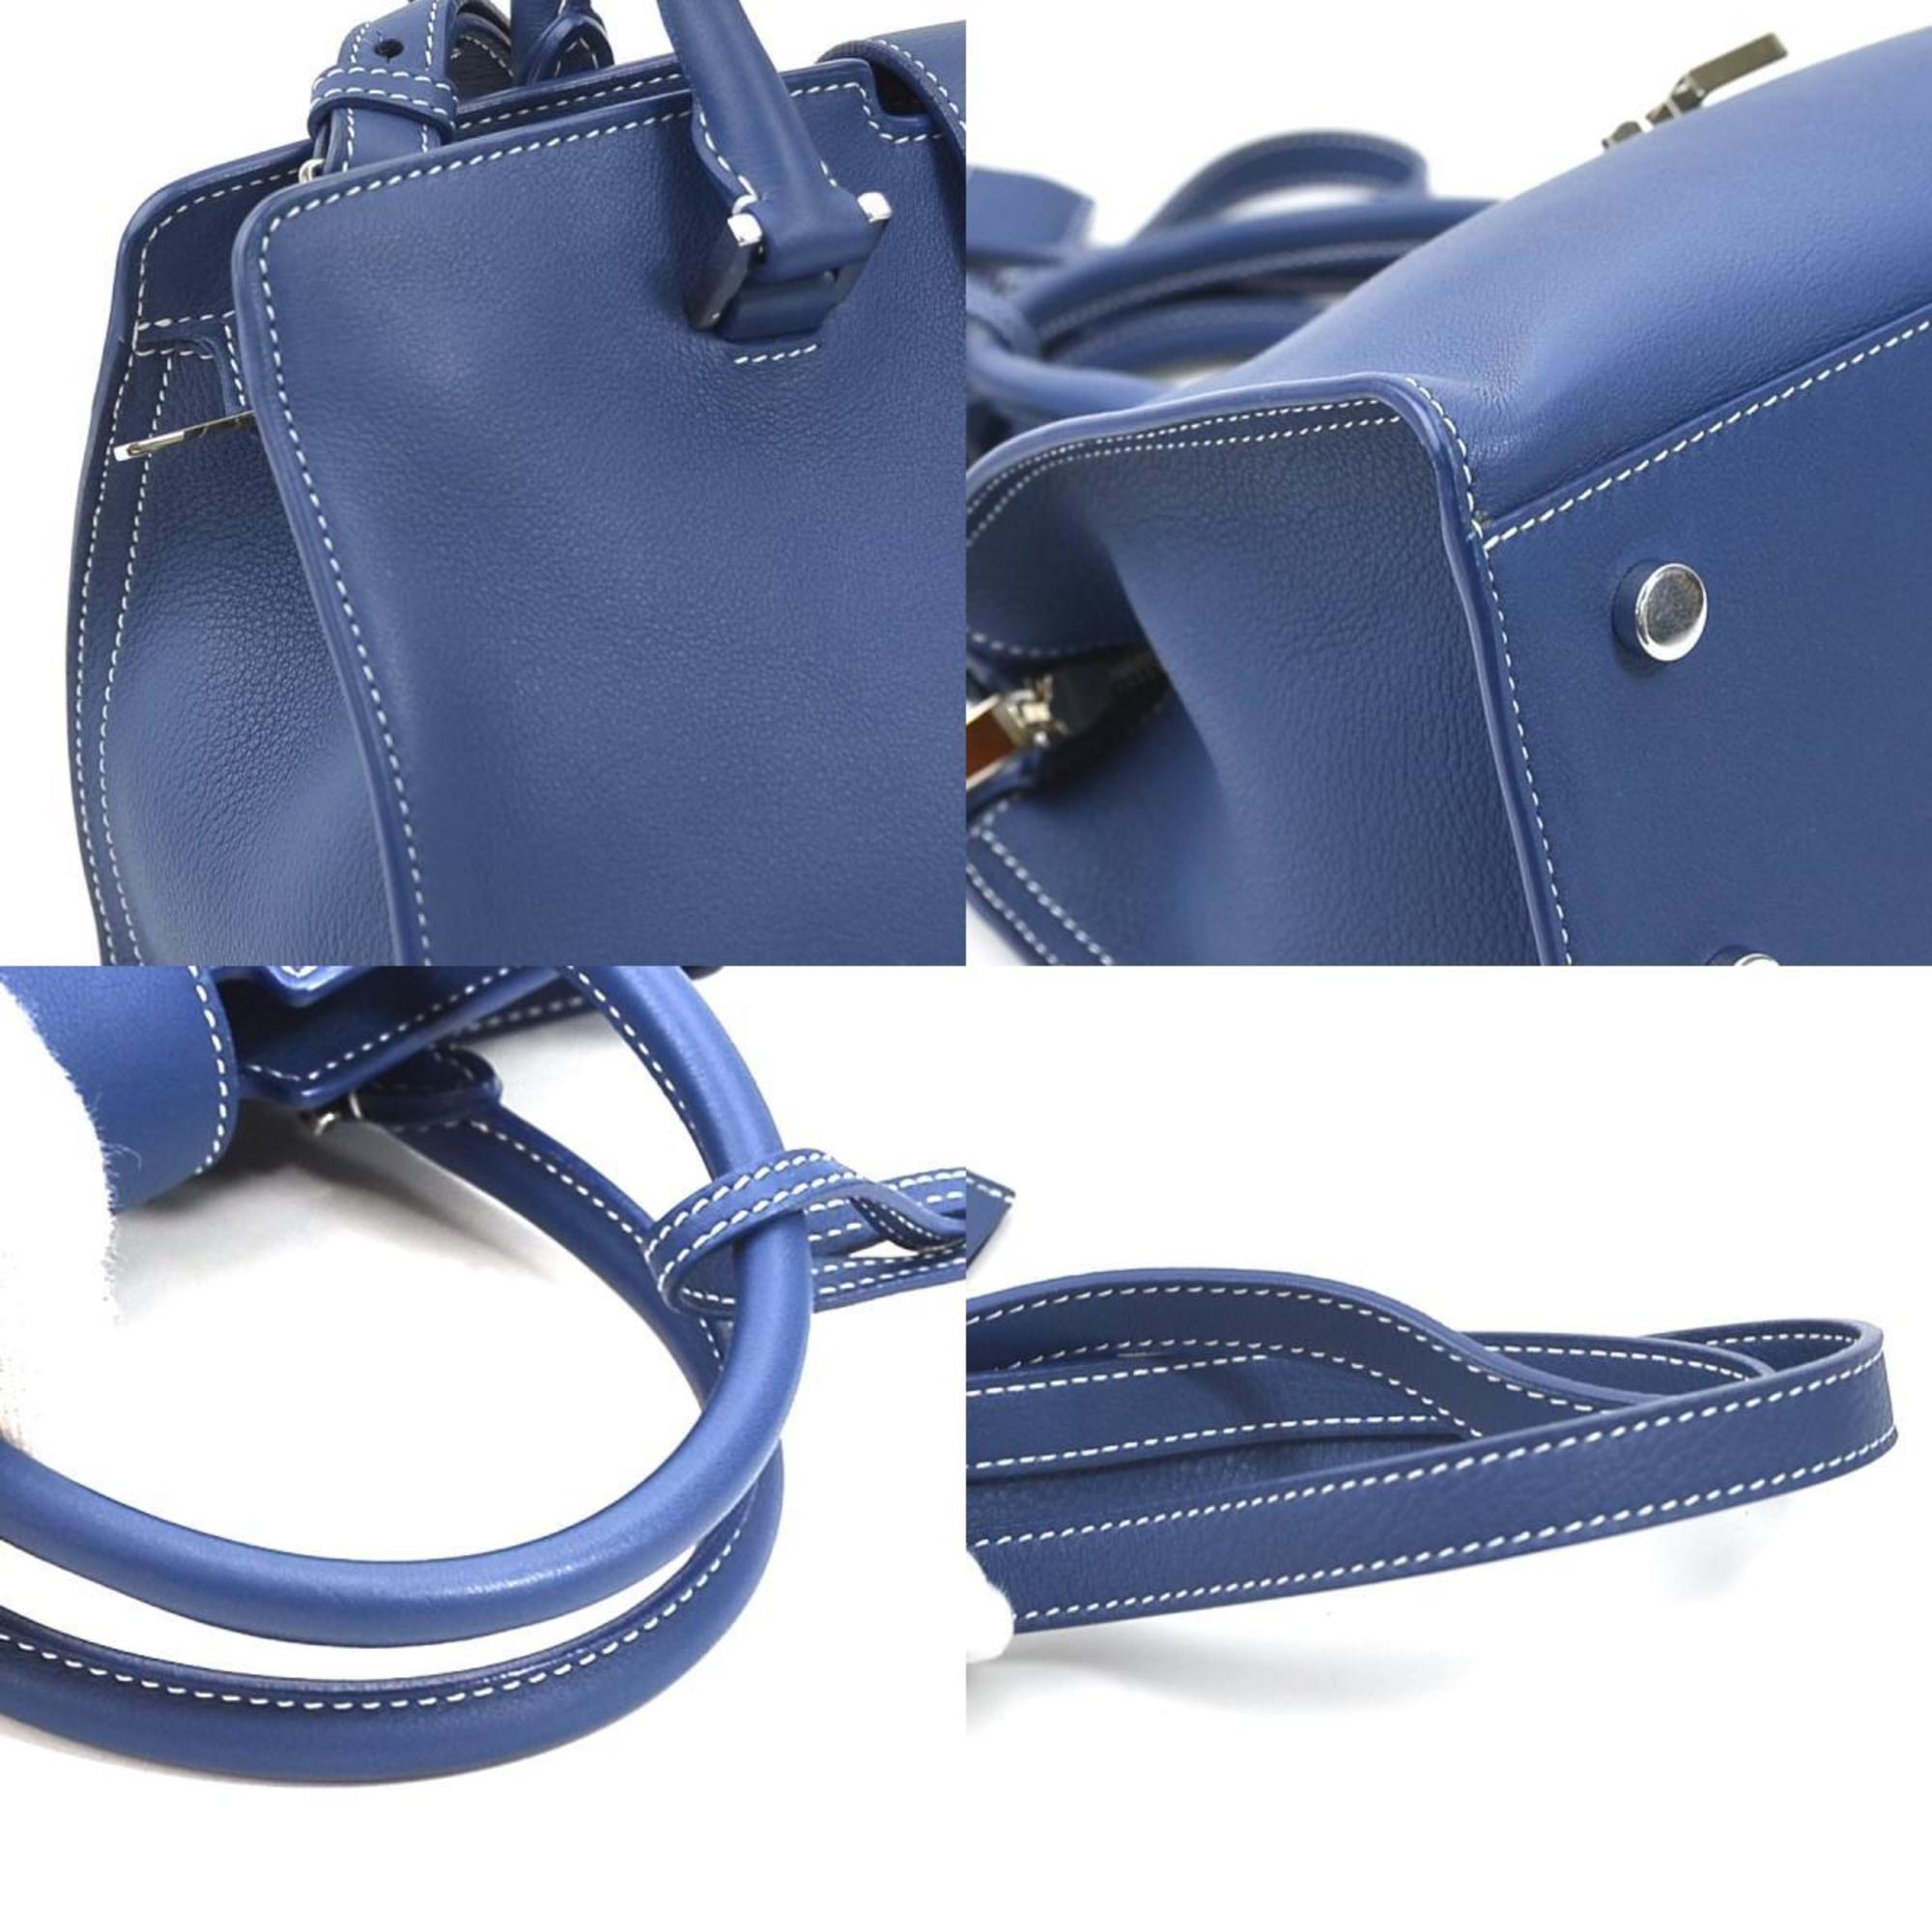 Saint Laurent SAINT LAURENT Handbag Shoulder Bag Baby Cabas Leather Cobalt Blue Silver Ladies 424868